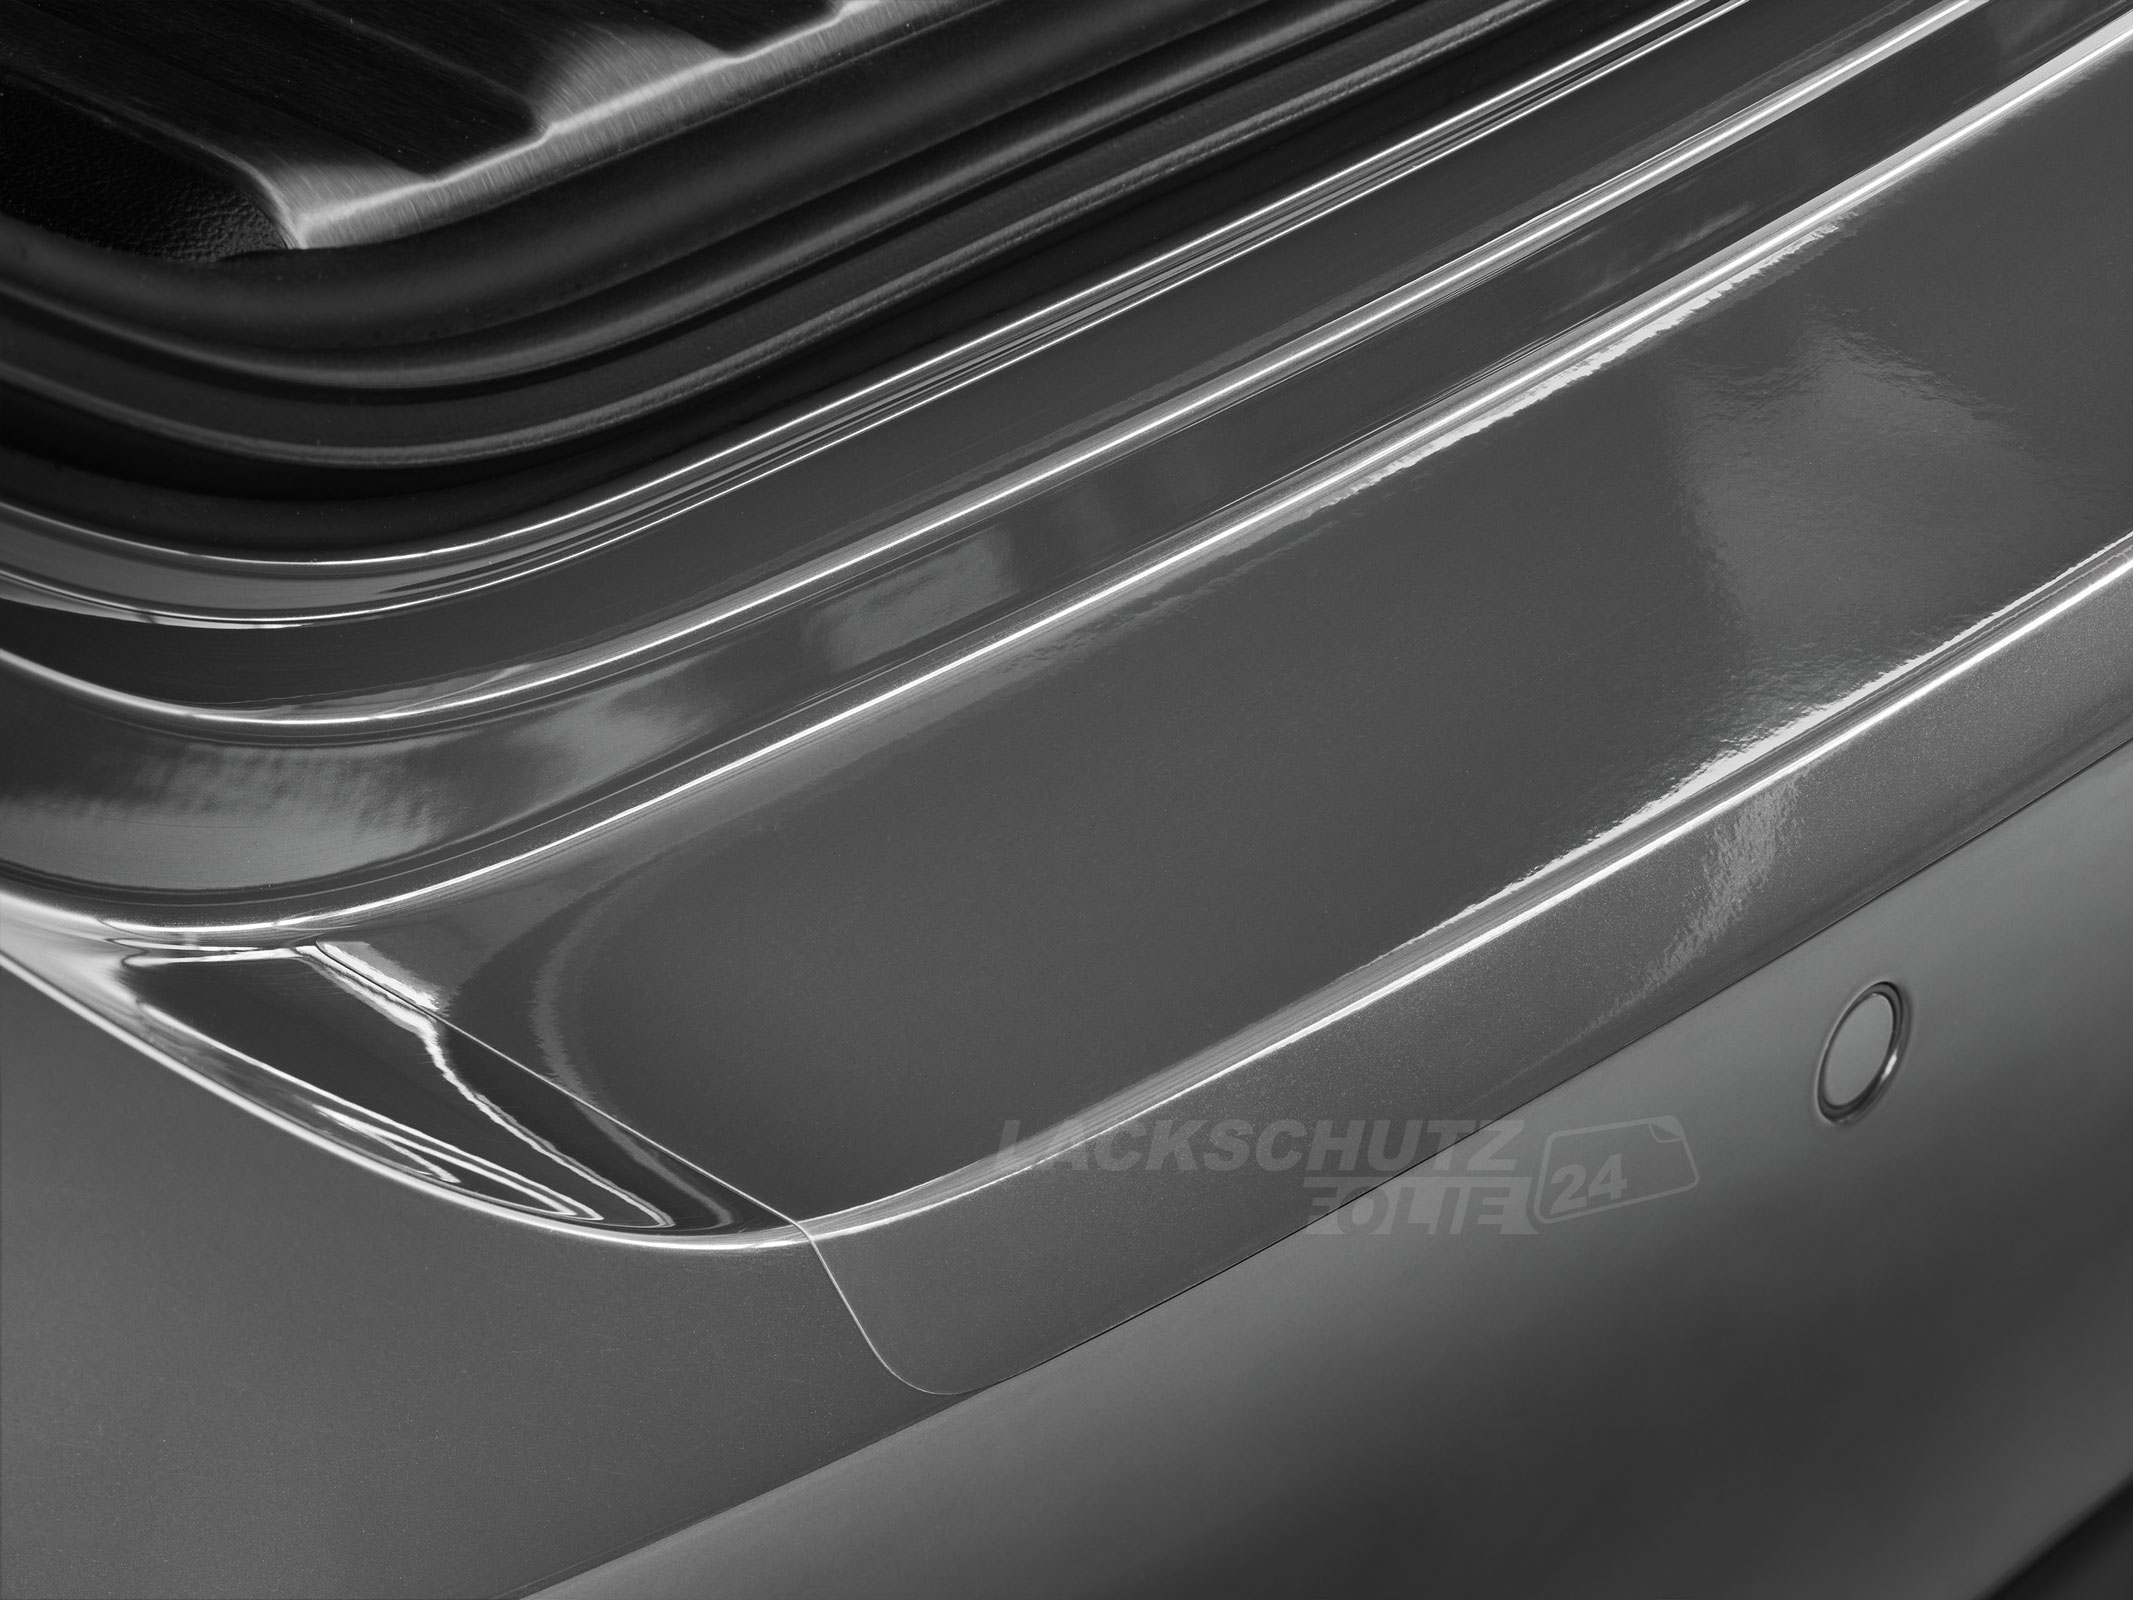 Ladekantenschutzfolie - Transparent Glatt Hochglänzend 240 µm stark für Subaru Forester (II) Typ SG, BJ 2006-2008